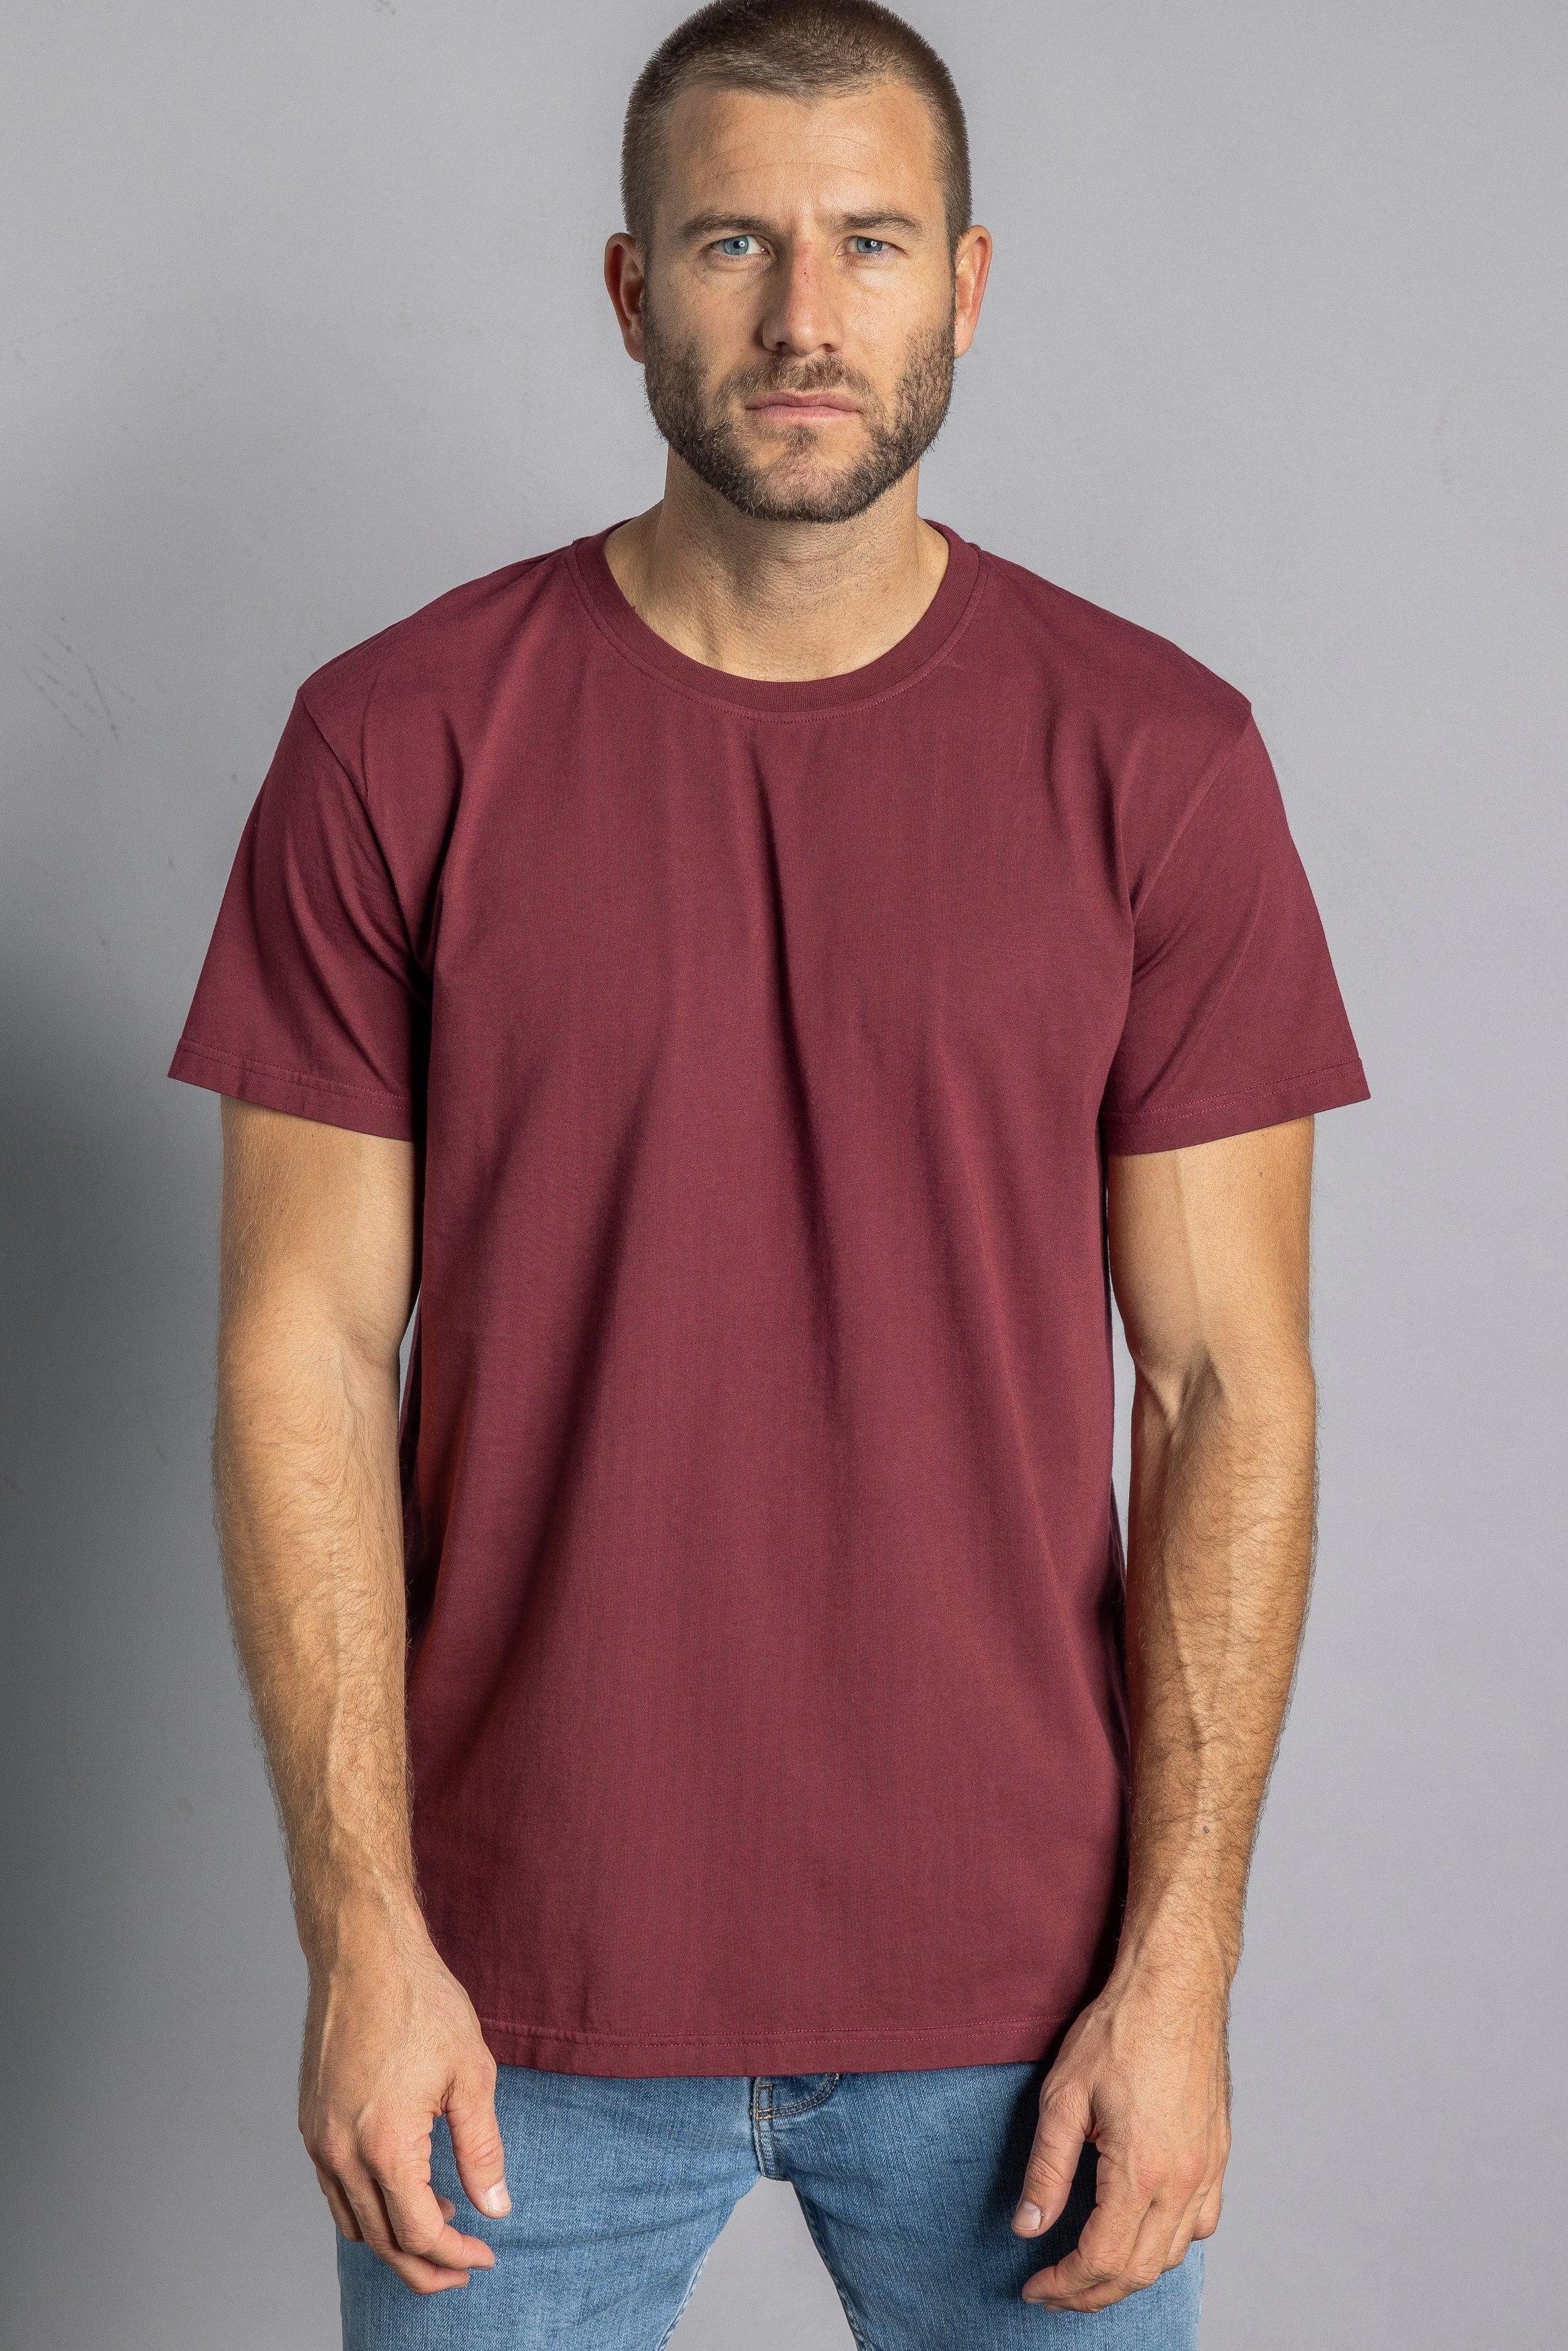 Dunkelrotes T-Shirt Premium Blank Standard aus 100% Bio-Baumwolle von DIRTS